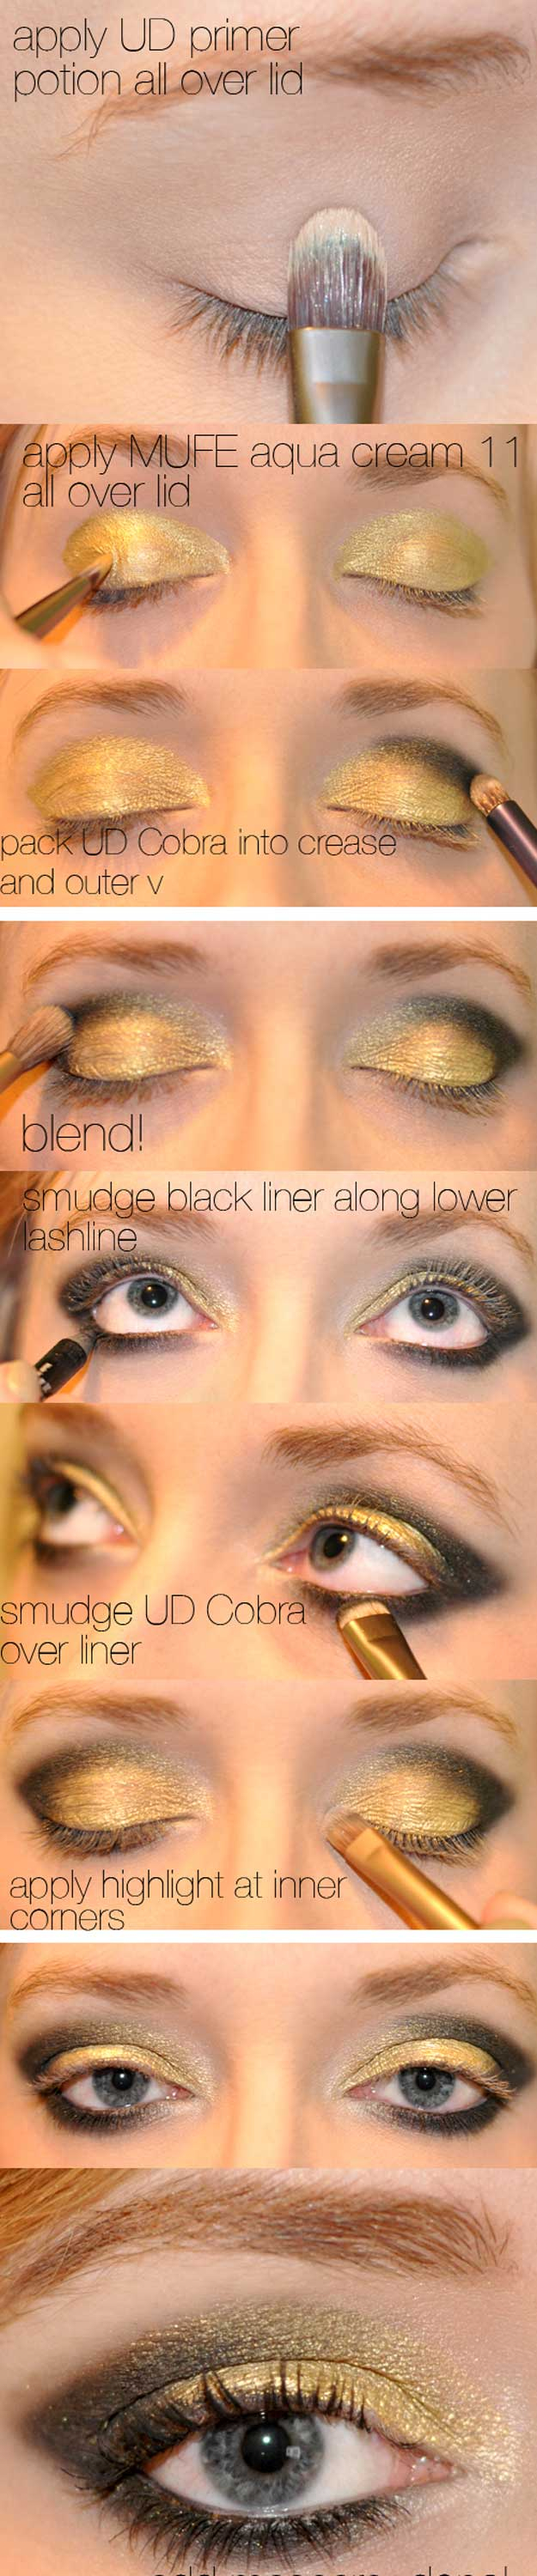 Gold Glitter Eye Makeup 35 Glitter Eye Makeup Tutorials The Goddess